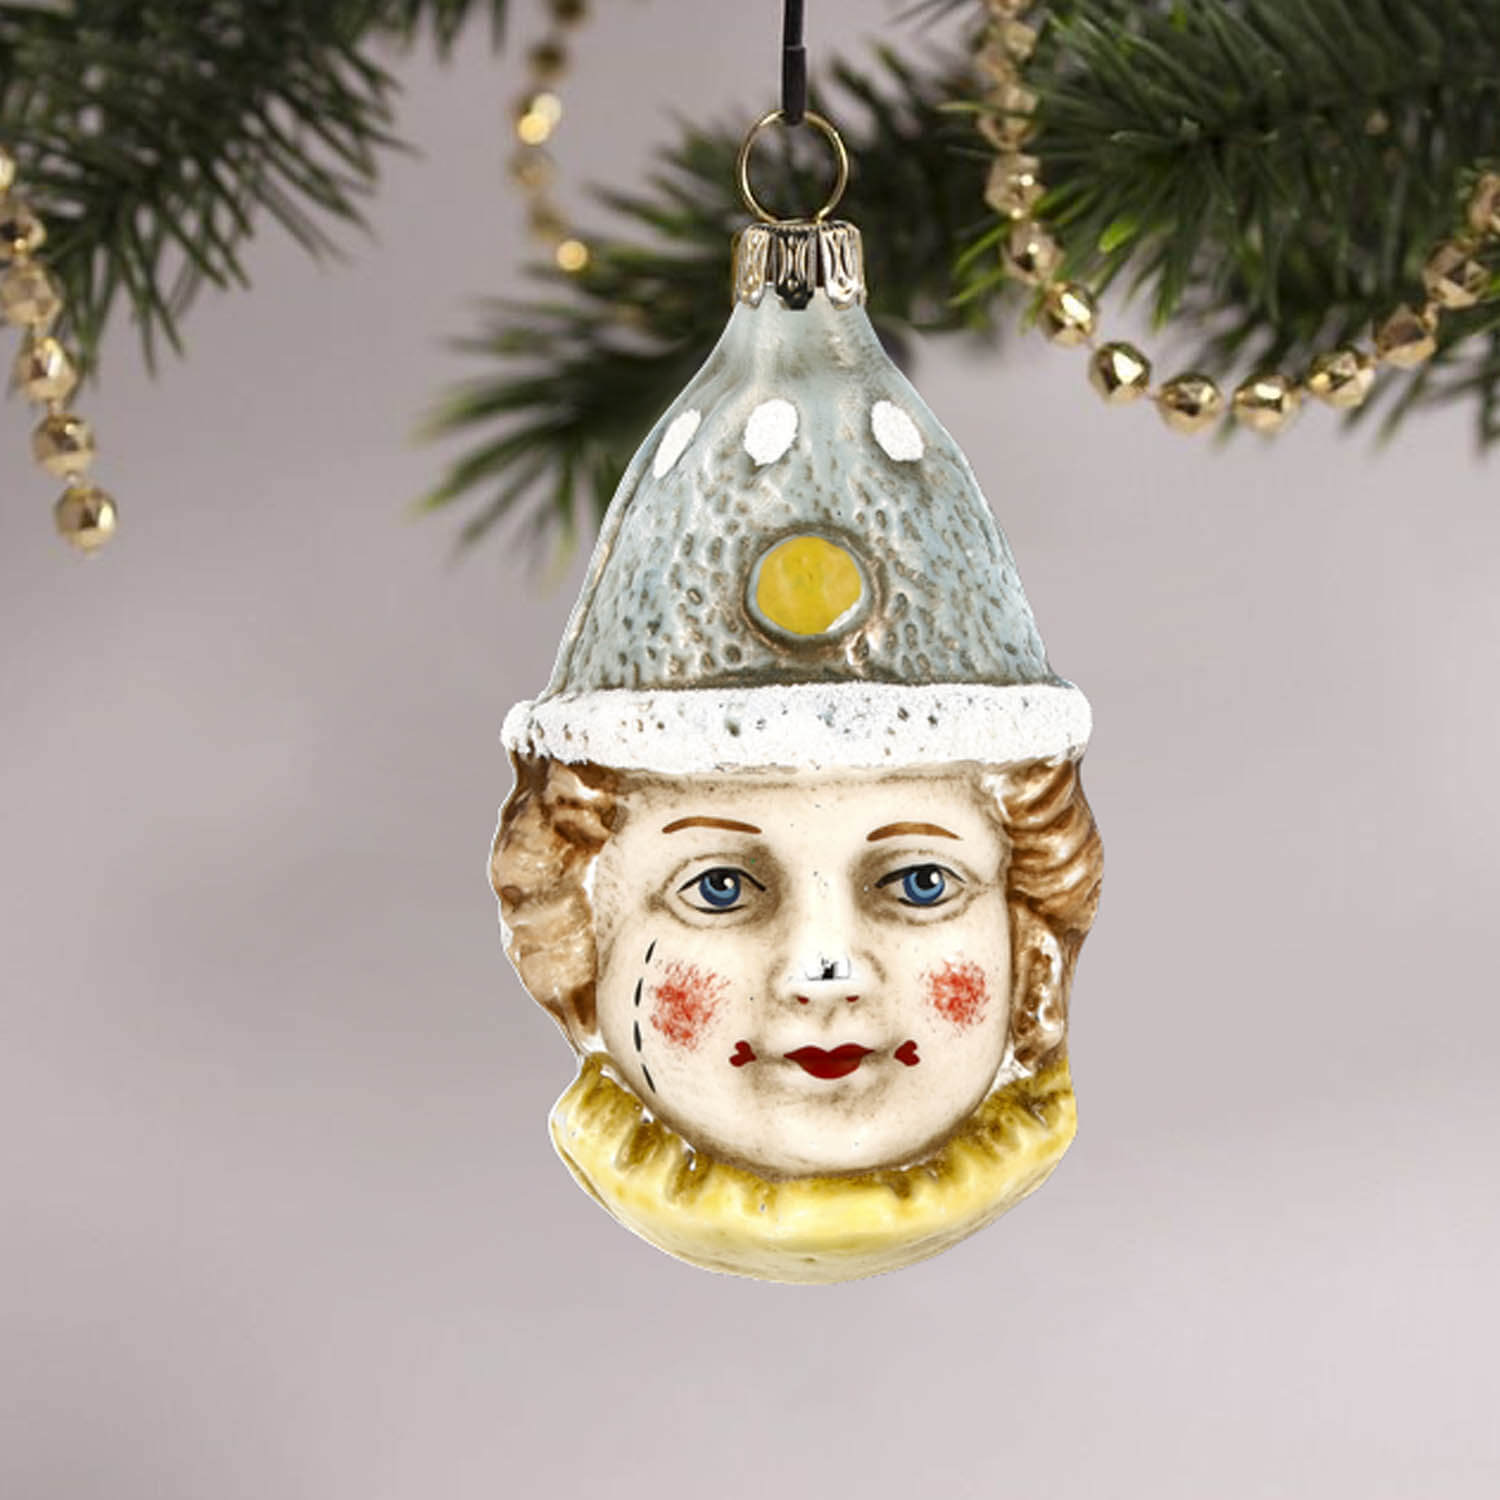 MAROLIN® - Glass ornament "Clown with blue hat"